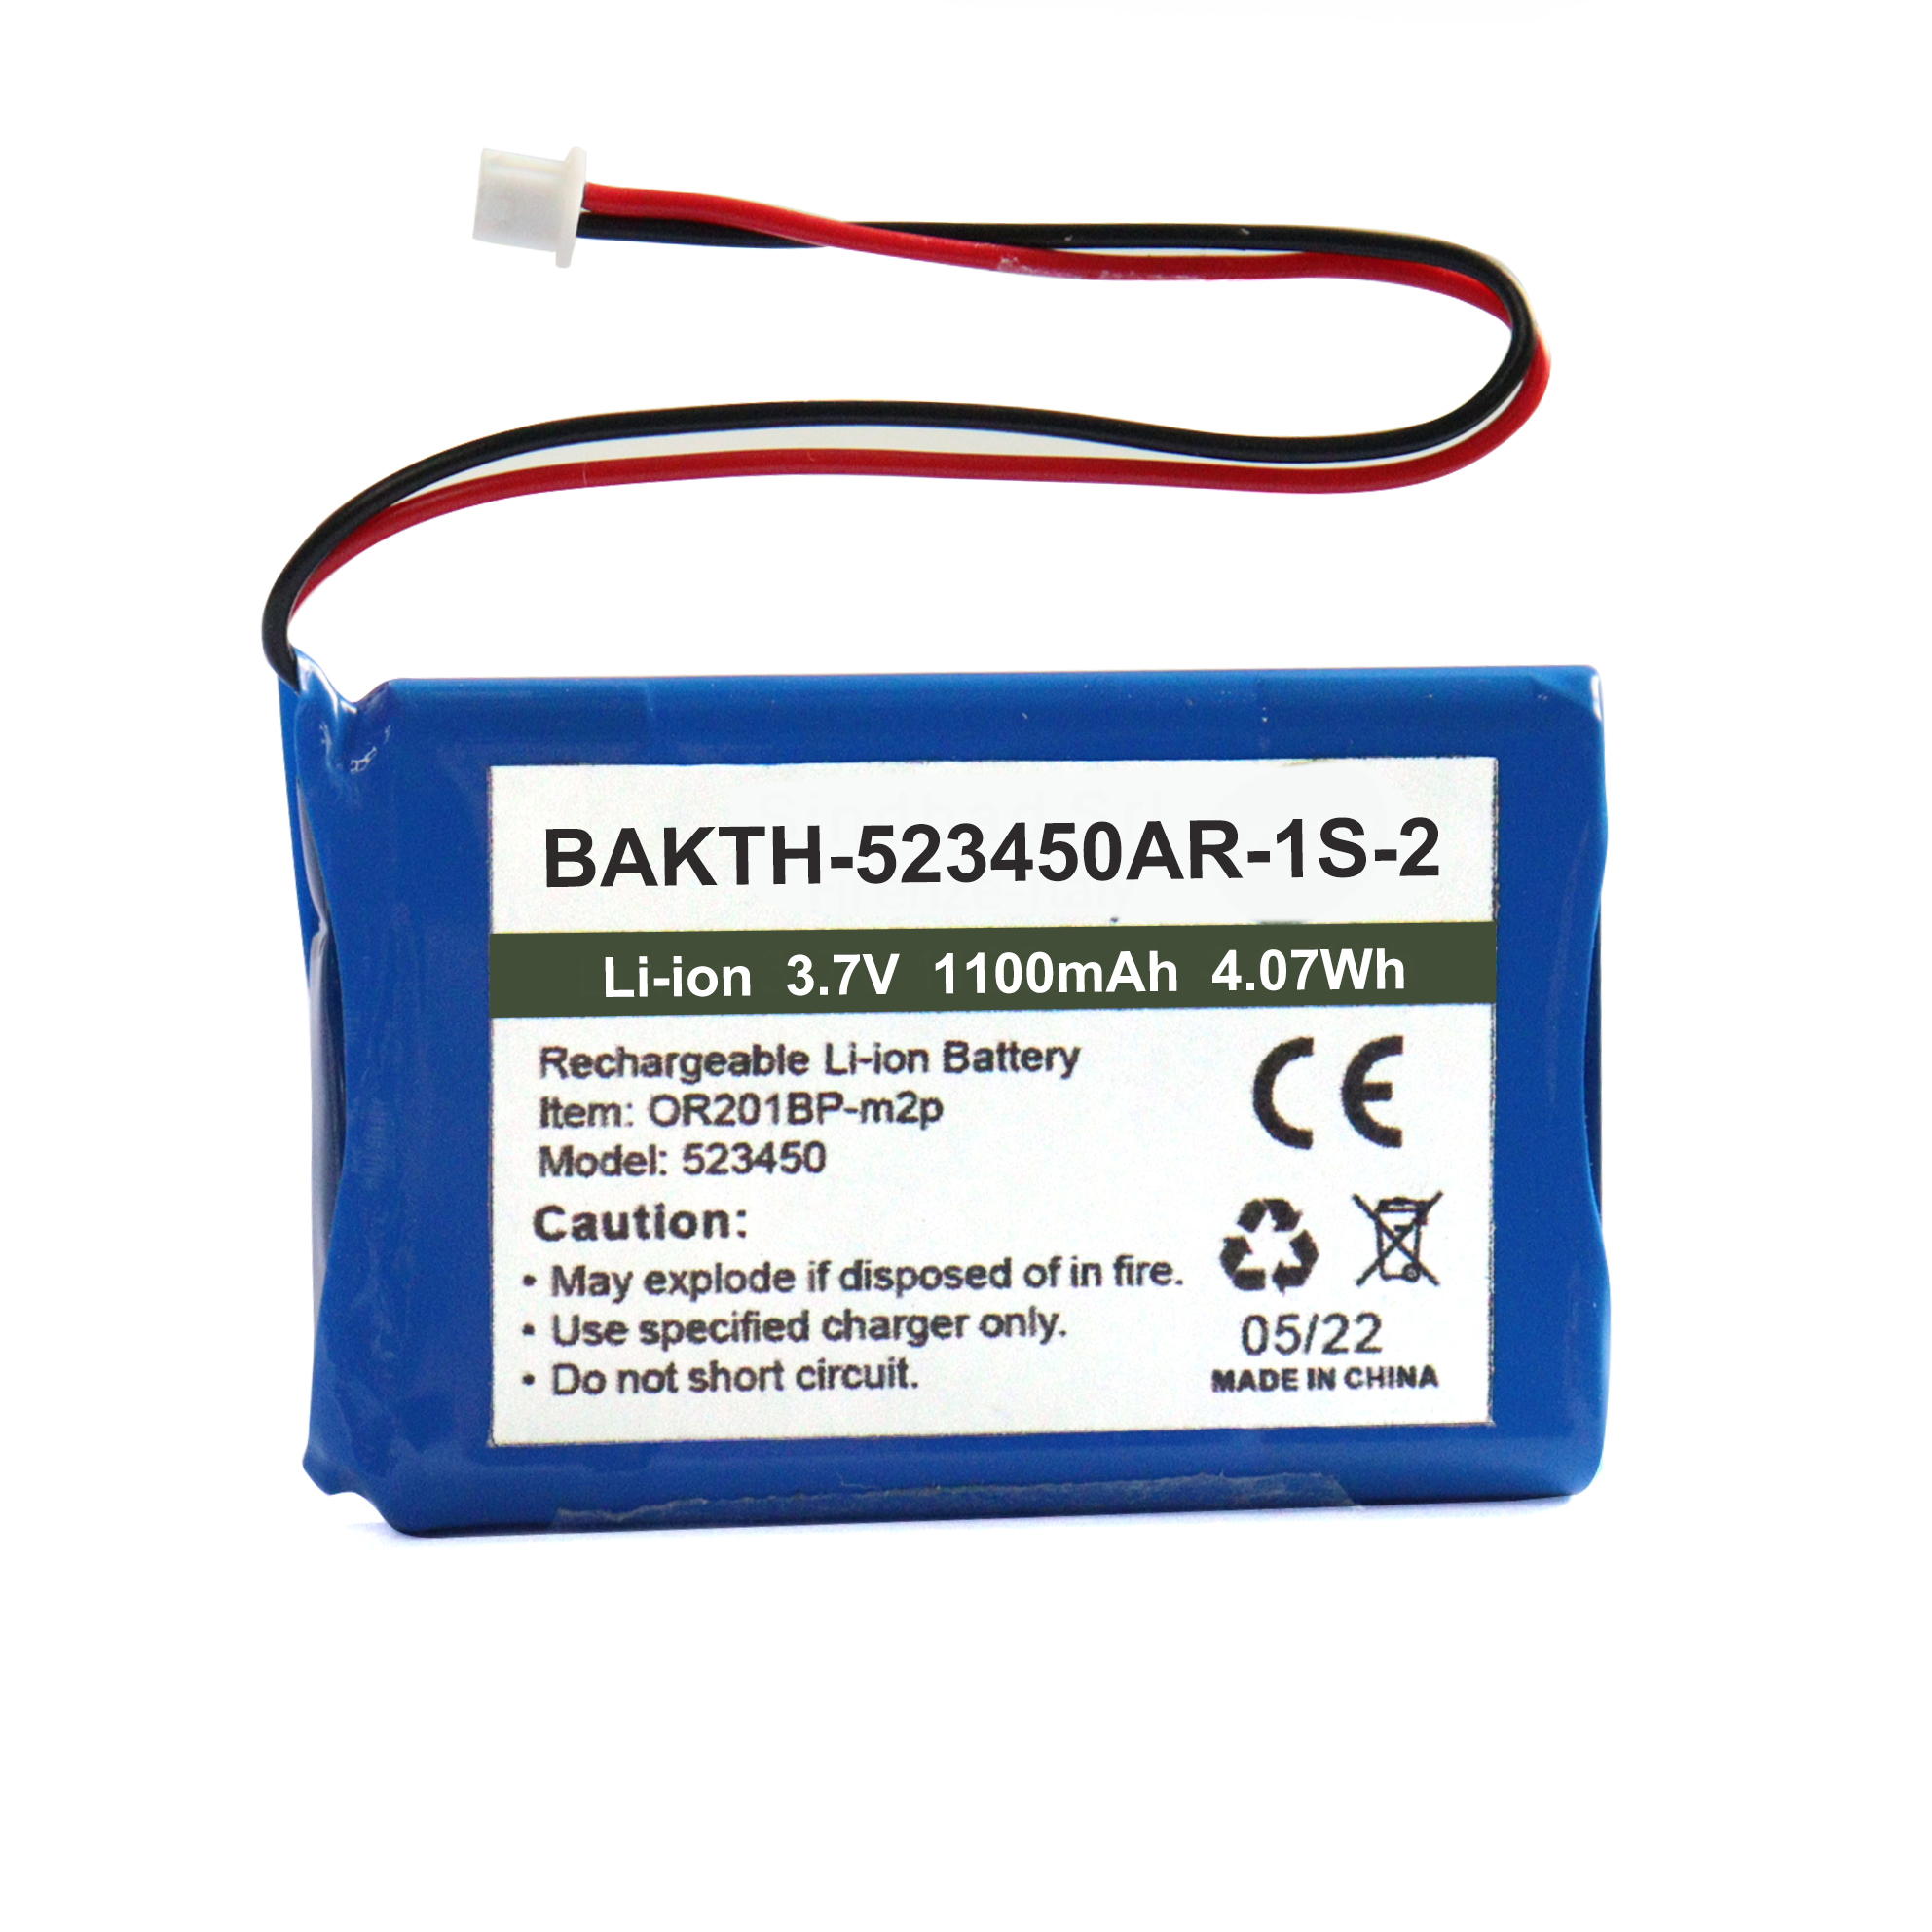 Bateria de íons de lítio Bakth 1100mAh 523450 Bateria